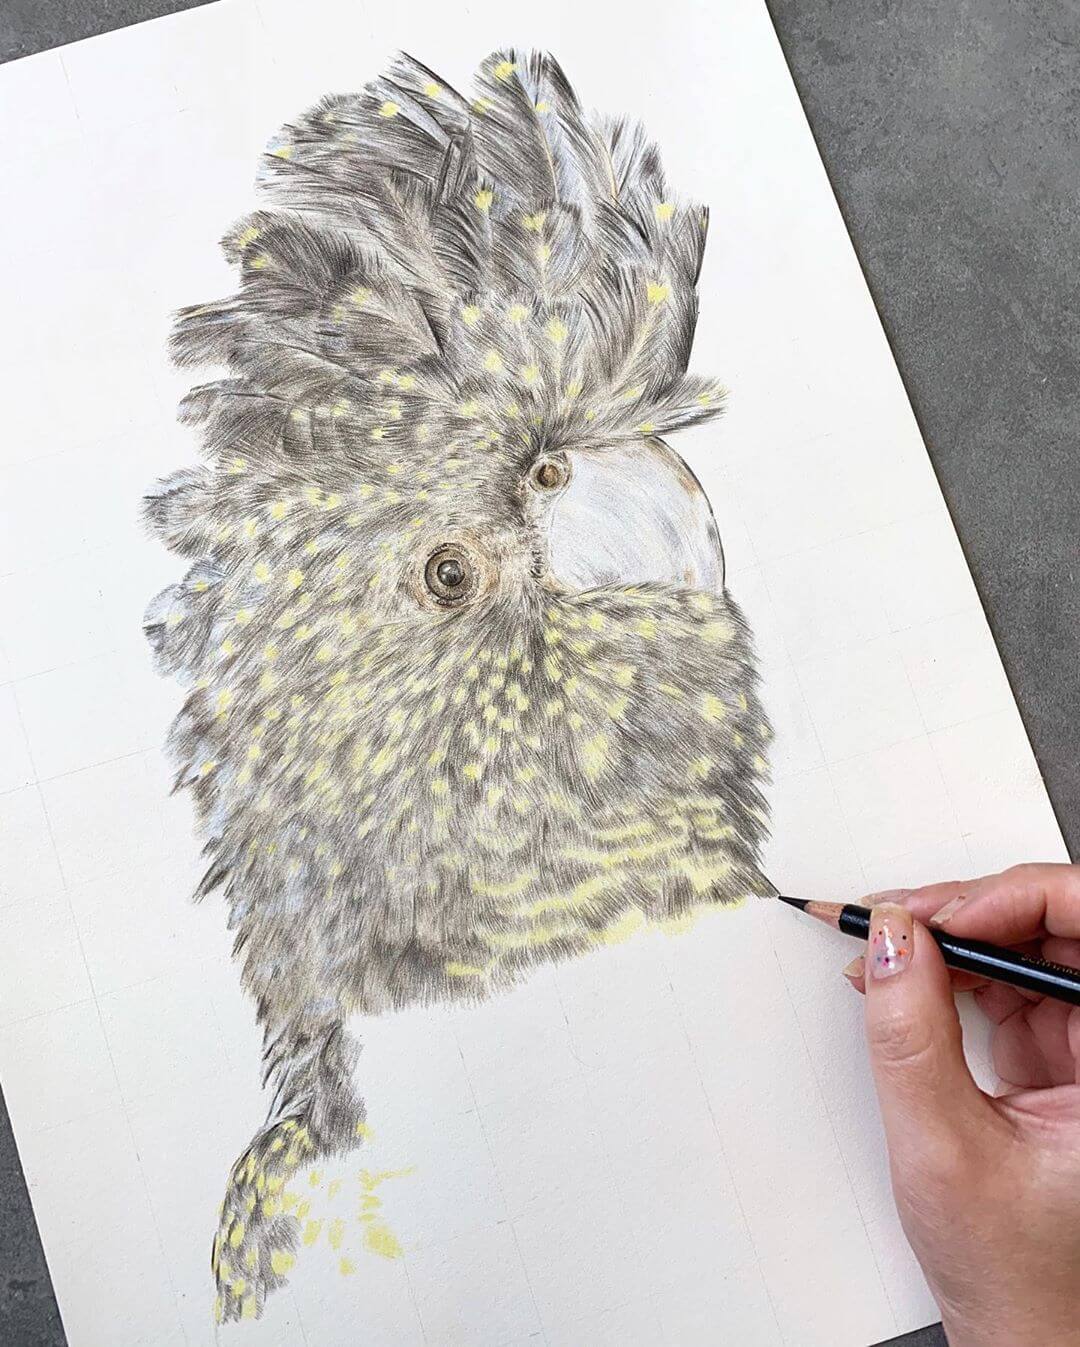 Original pencil artwork of the Black Cockatoo